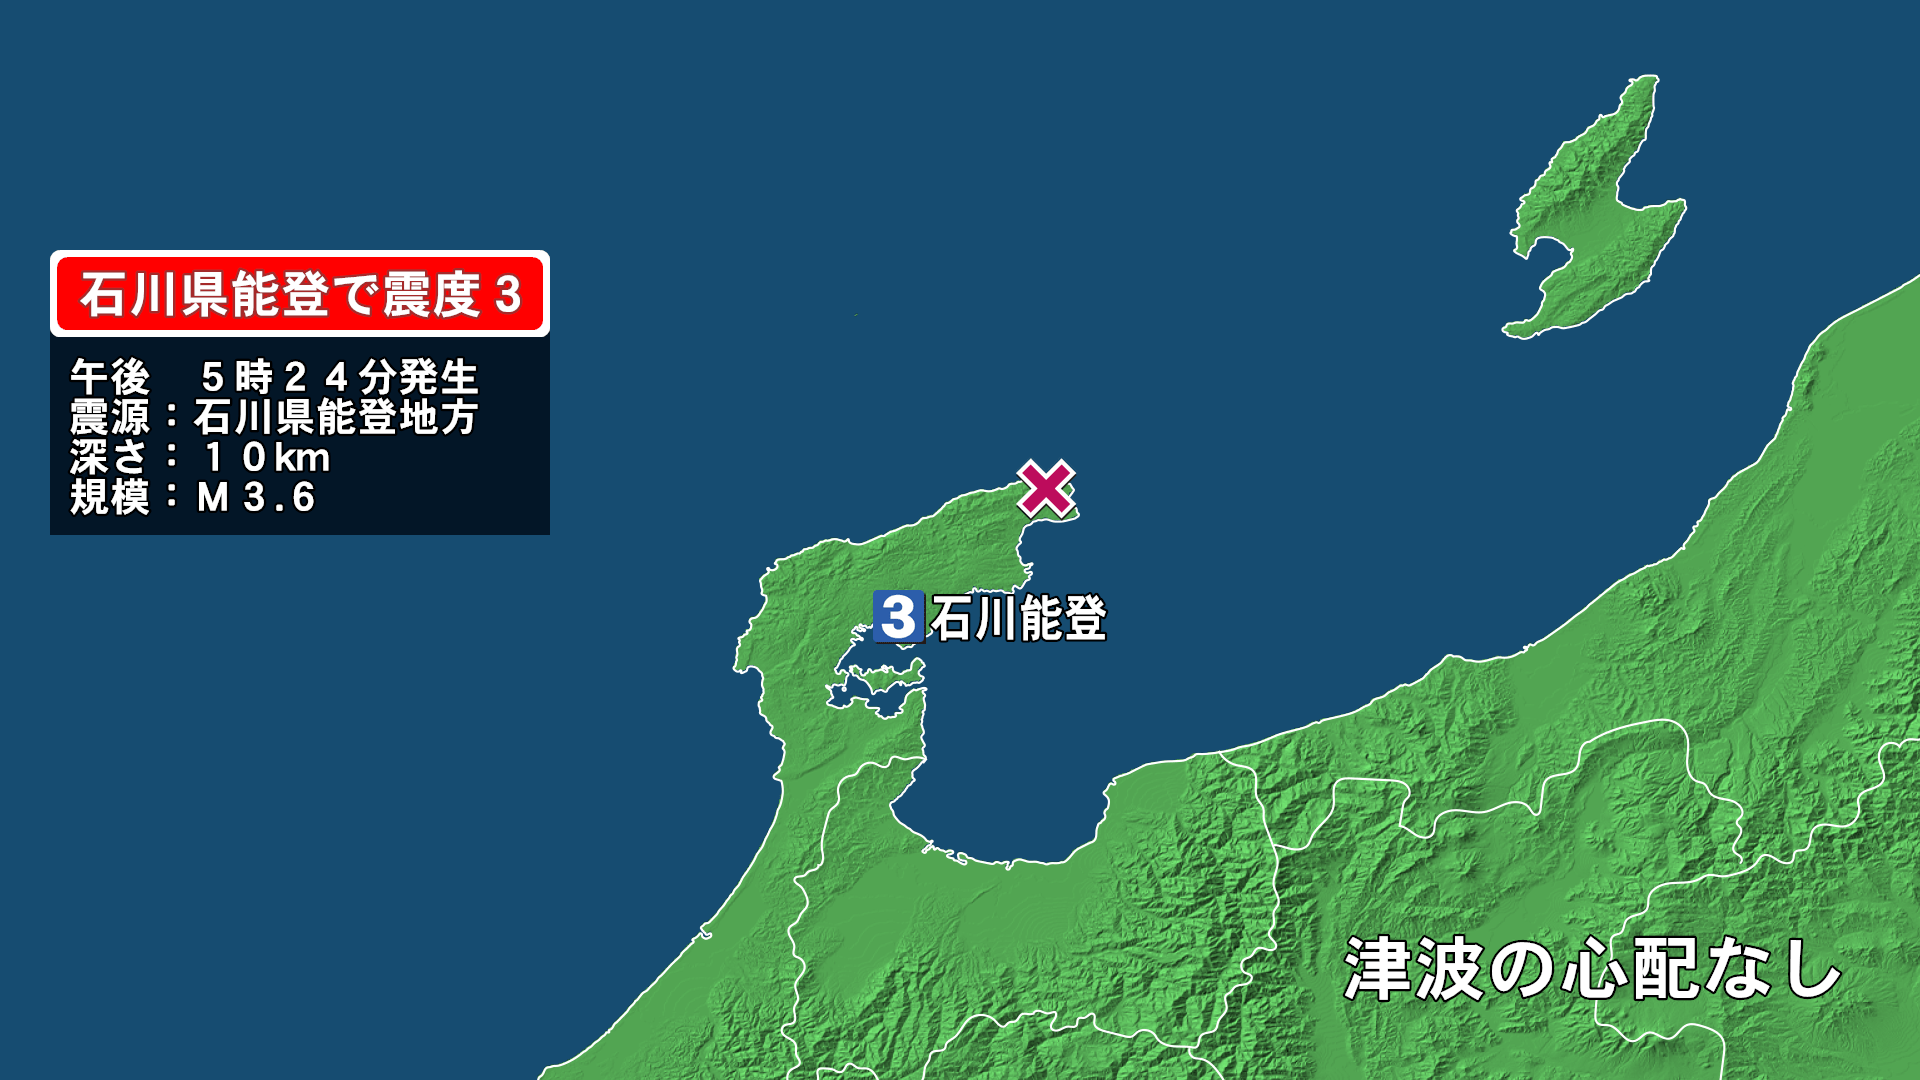 じしん 関東で地震の発生相次ぐ。江戸から伝わる「前兆」現象は本当か？